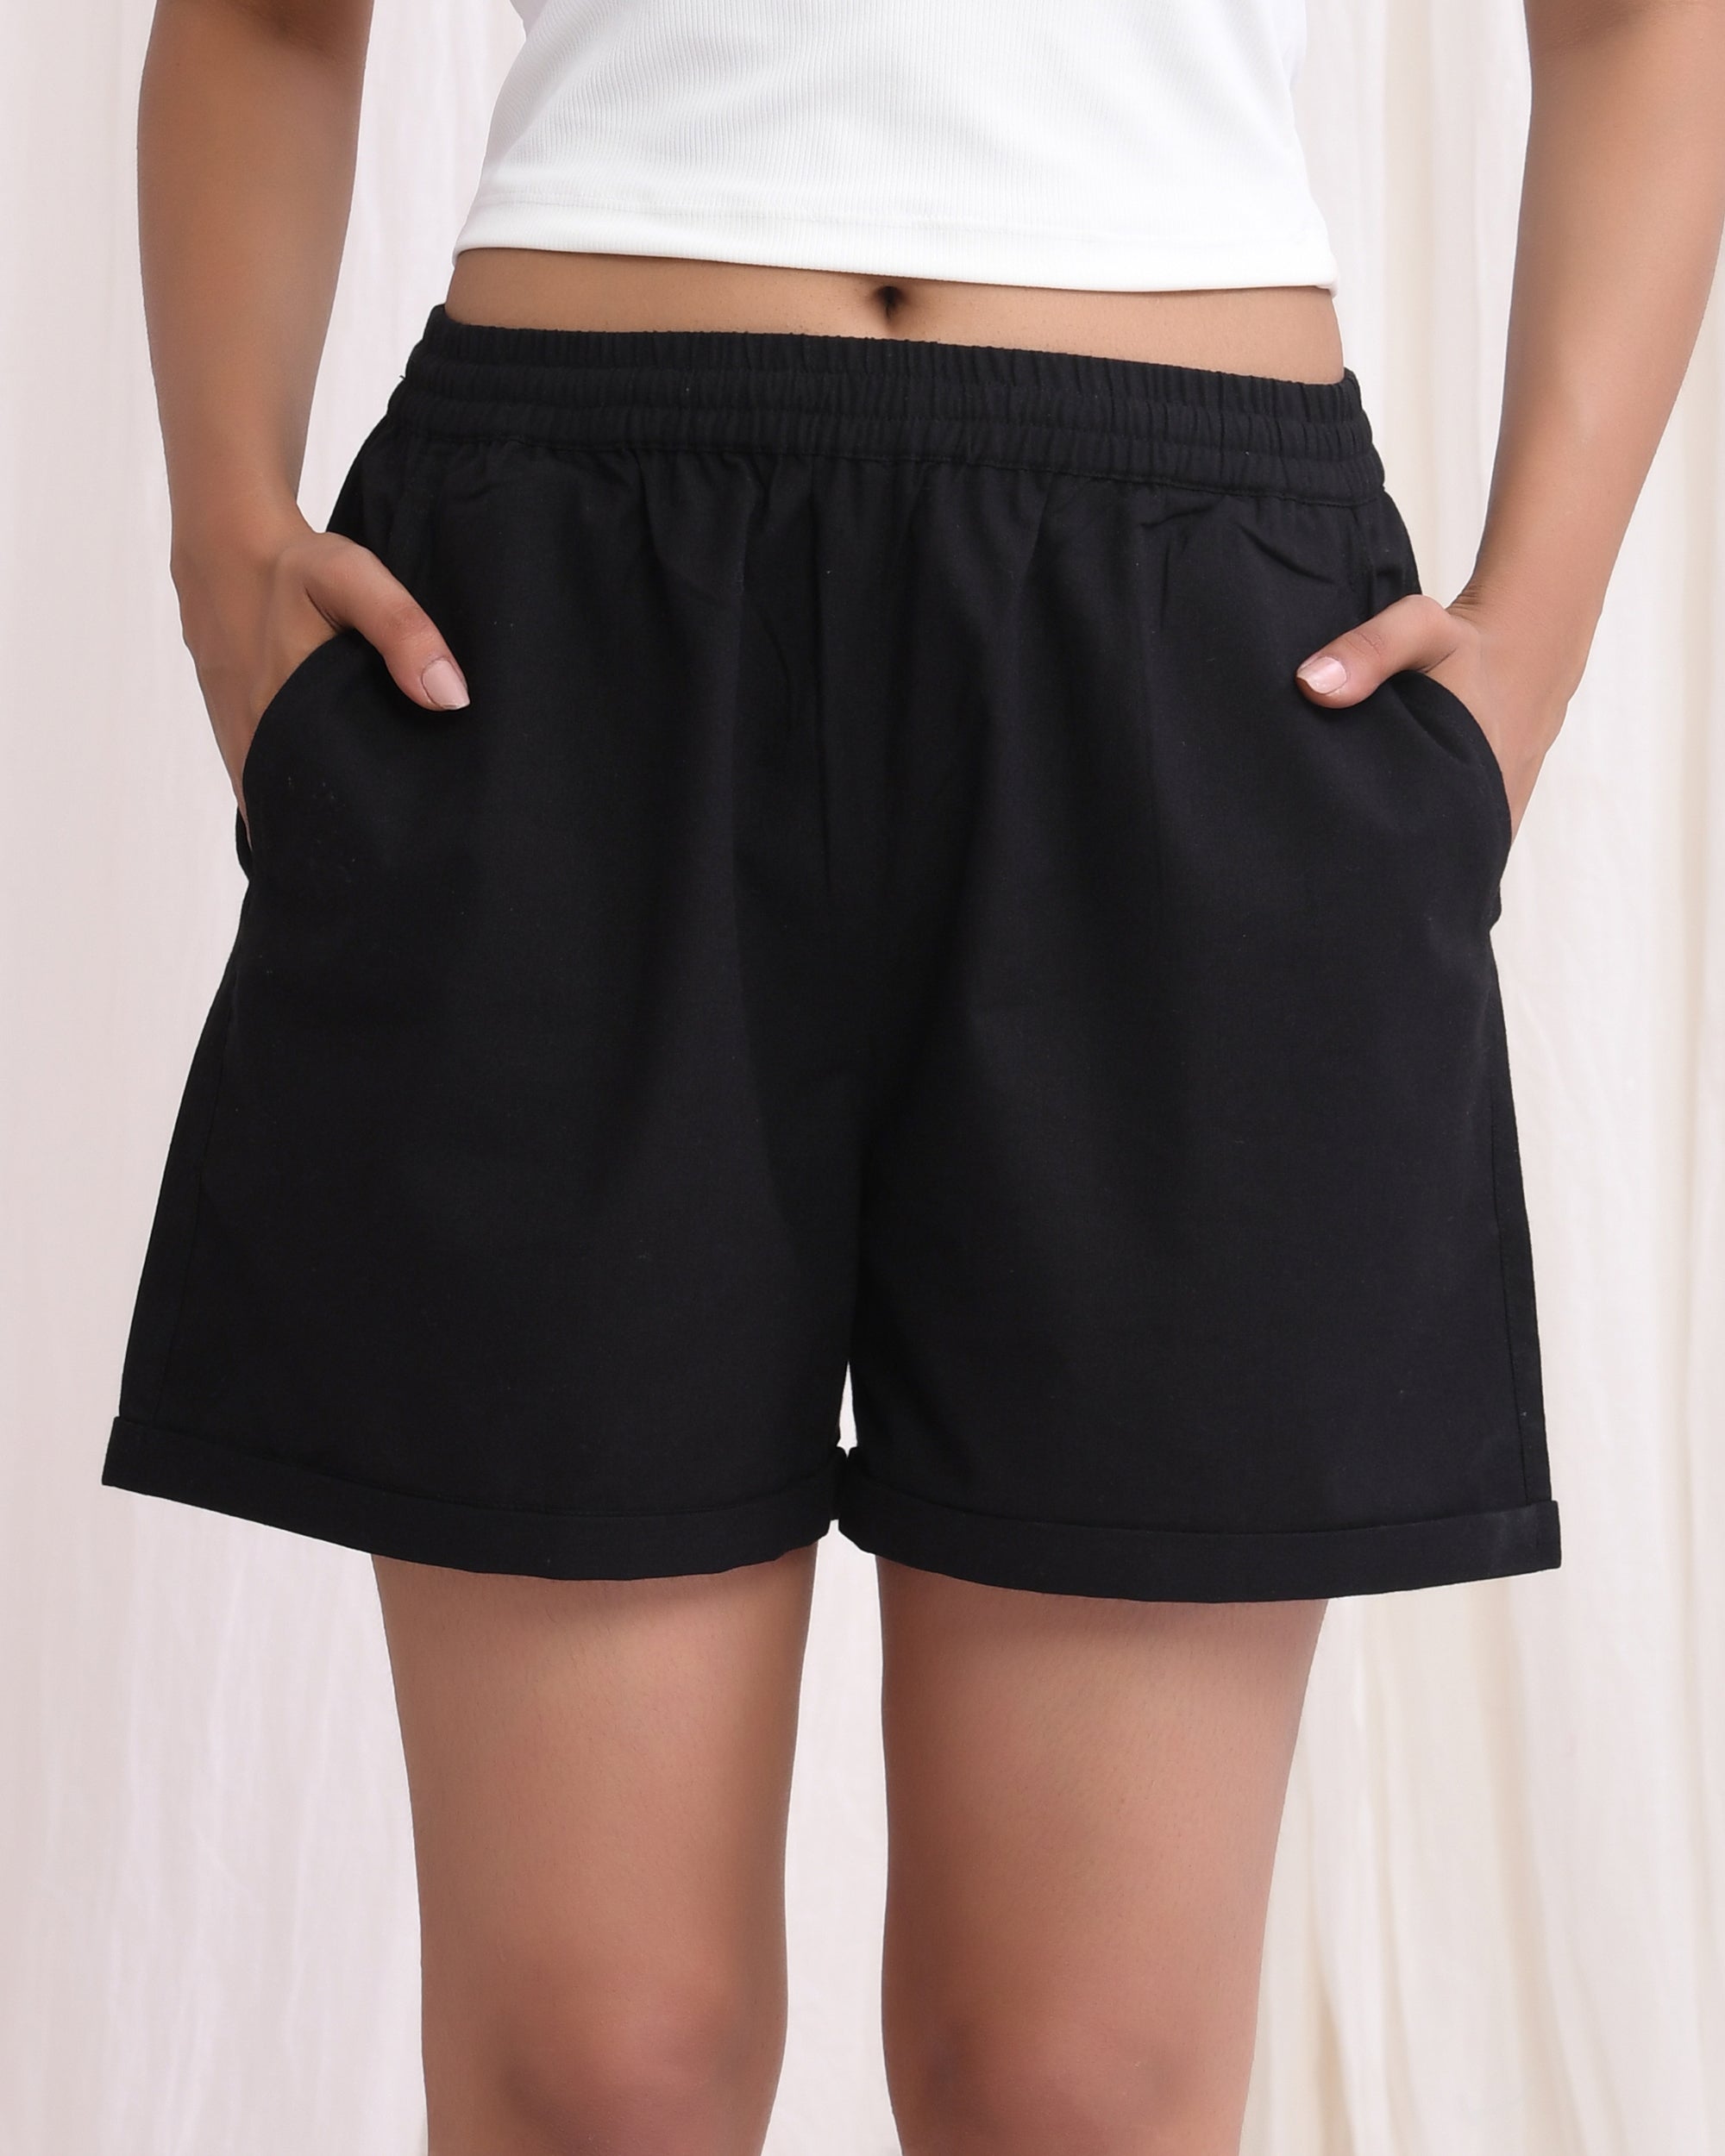 Kohl Black Cotton Shorts